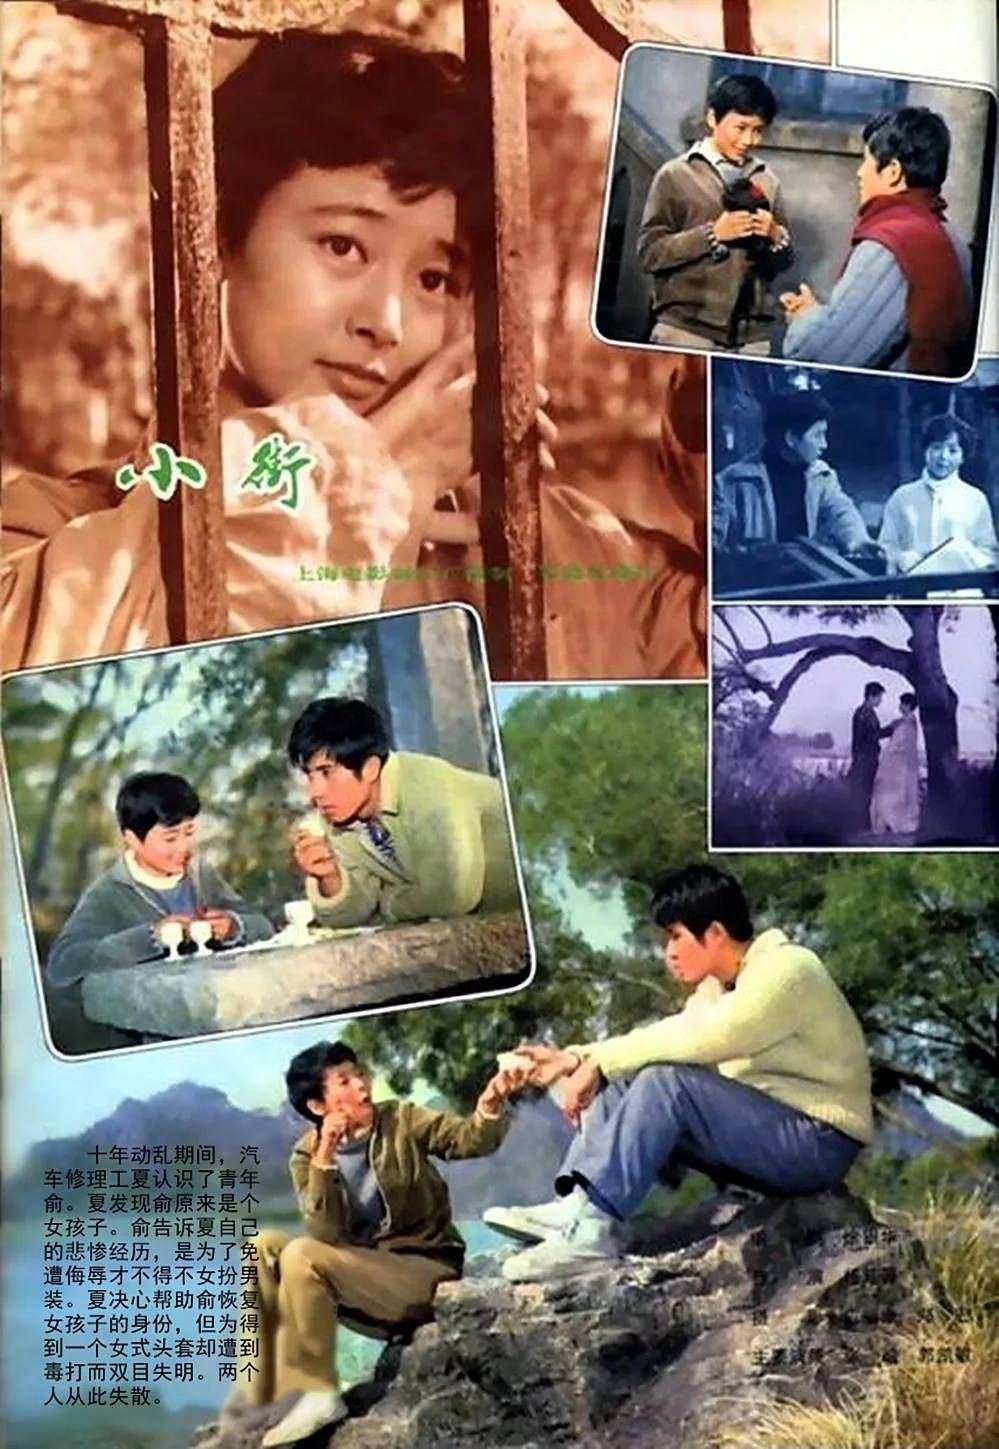 1981年上映的电影《小街》,由张瑜,郭凯敏主演,他们两当时正是年轻